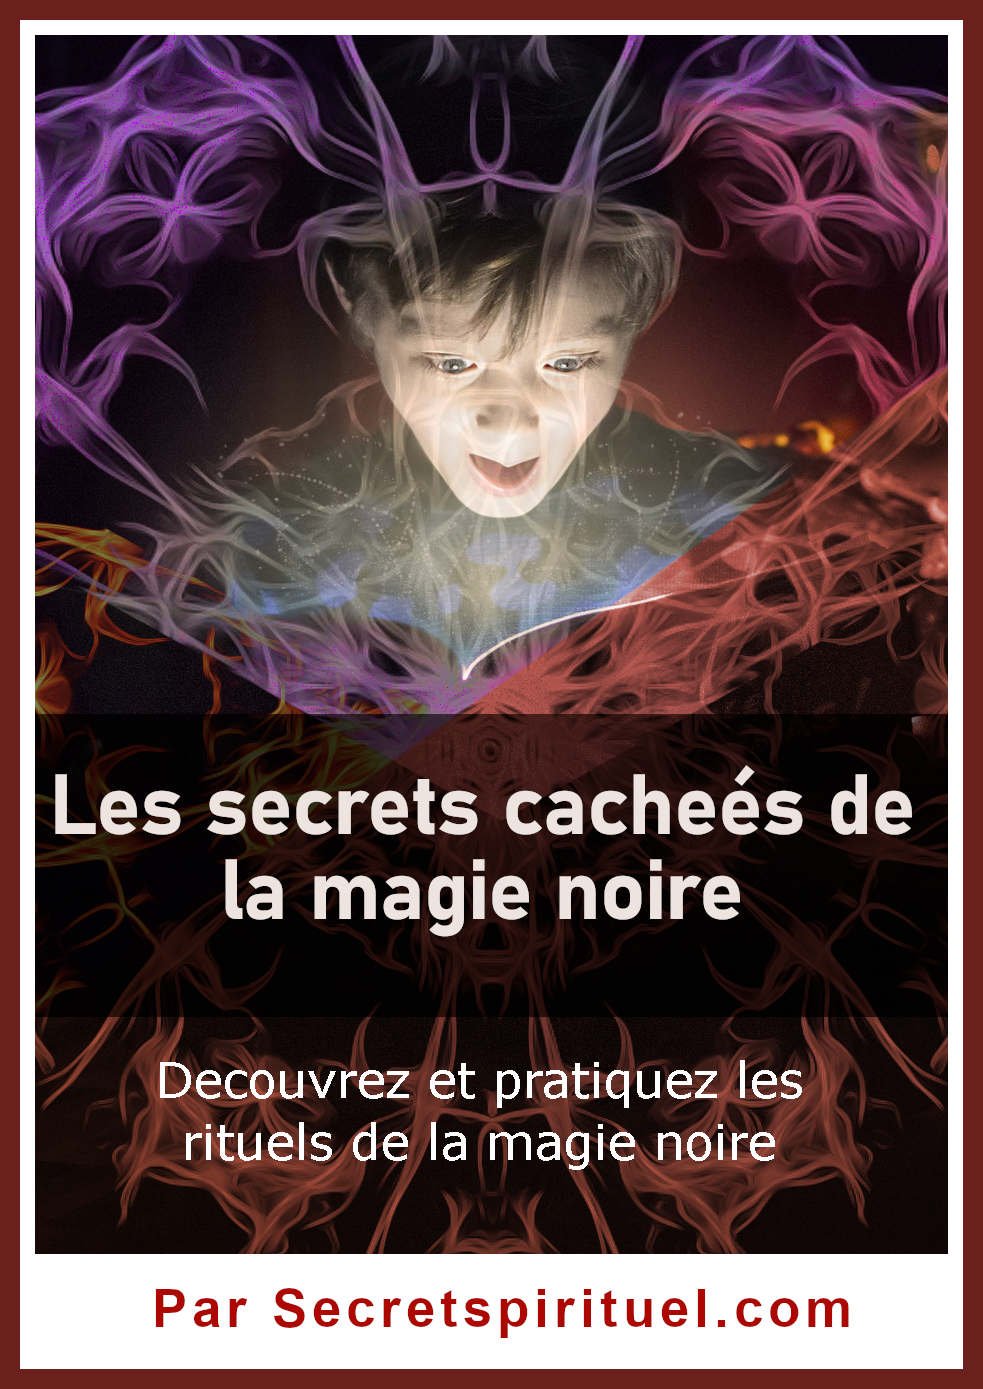 Les secrets cacheés de la magie noire secretspirituel